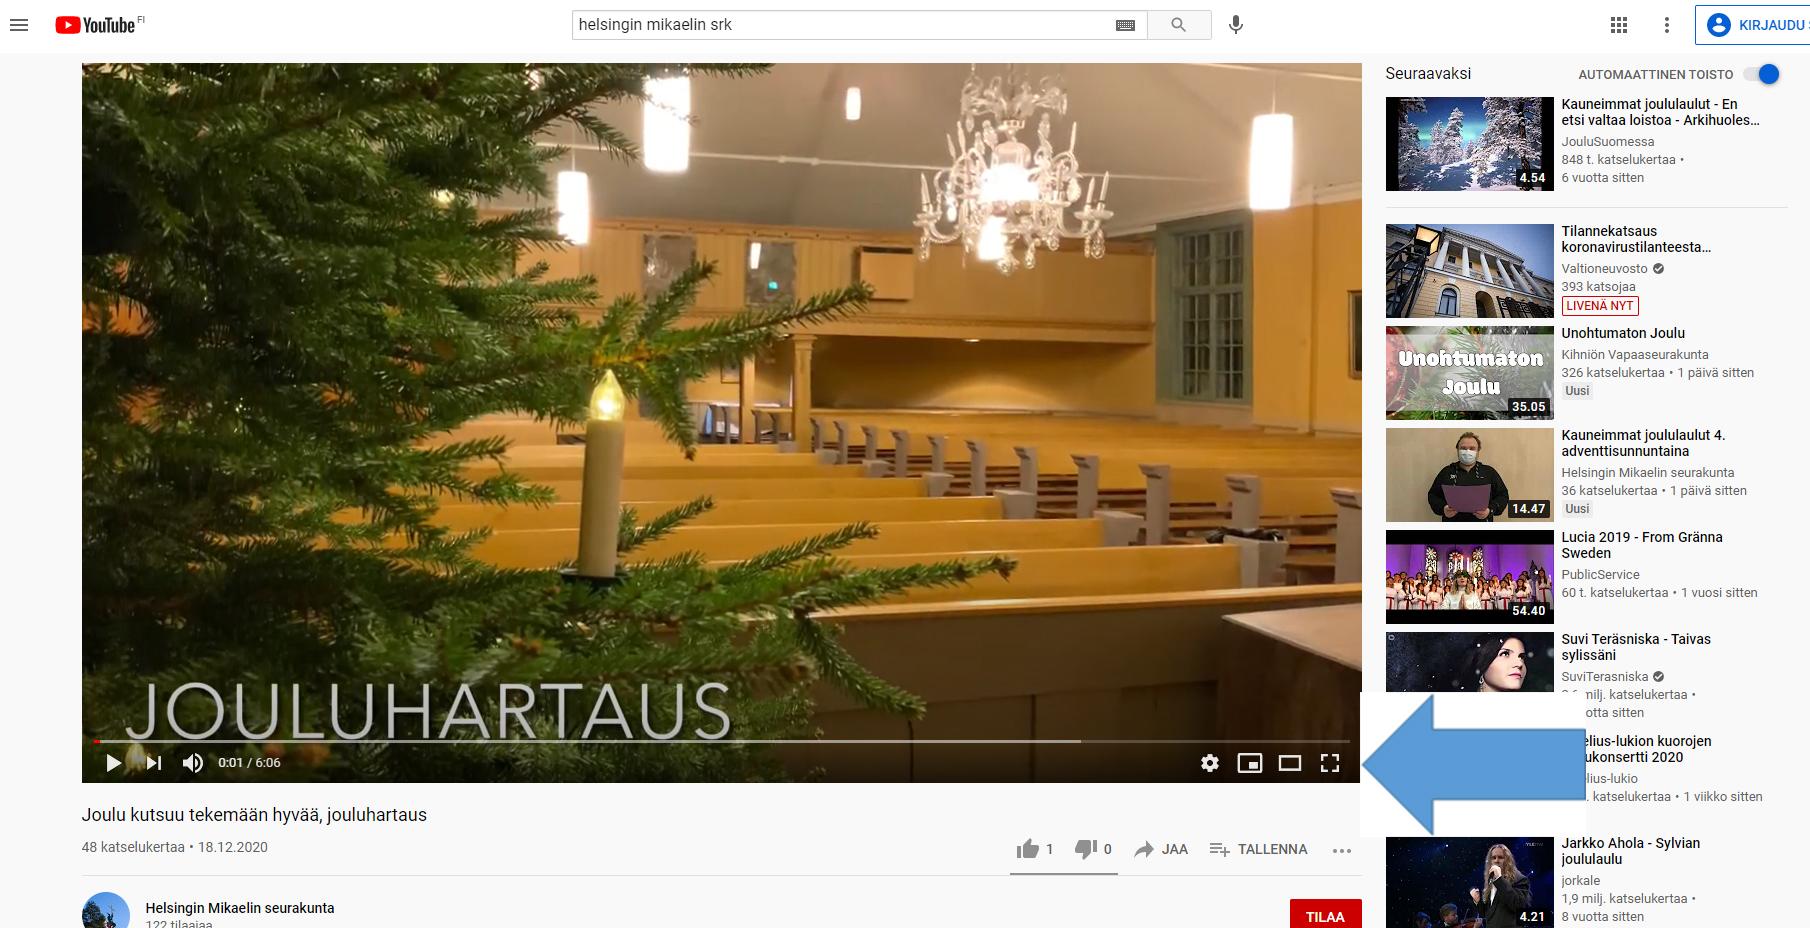 Youtube-sivu, jossa esi erkkinä jouluhartaus kirkossa. Nuolella merkitty koko ruudun näytölle avaava painike